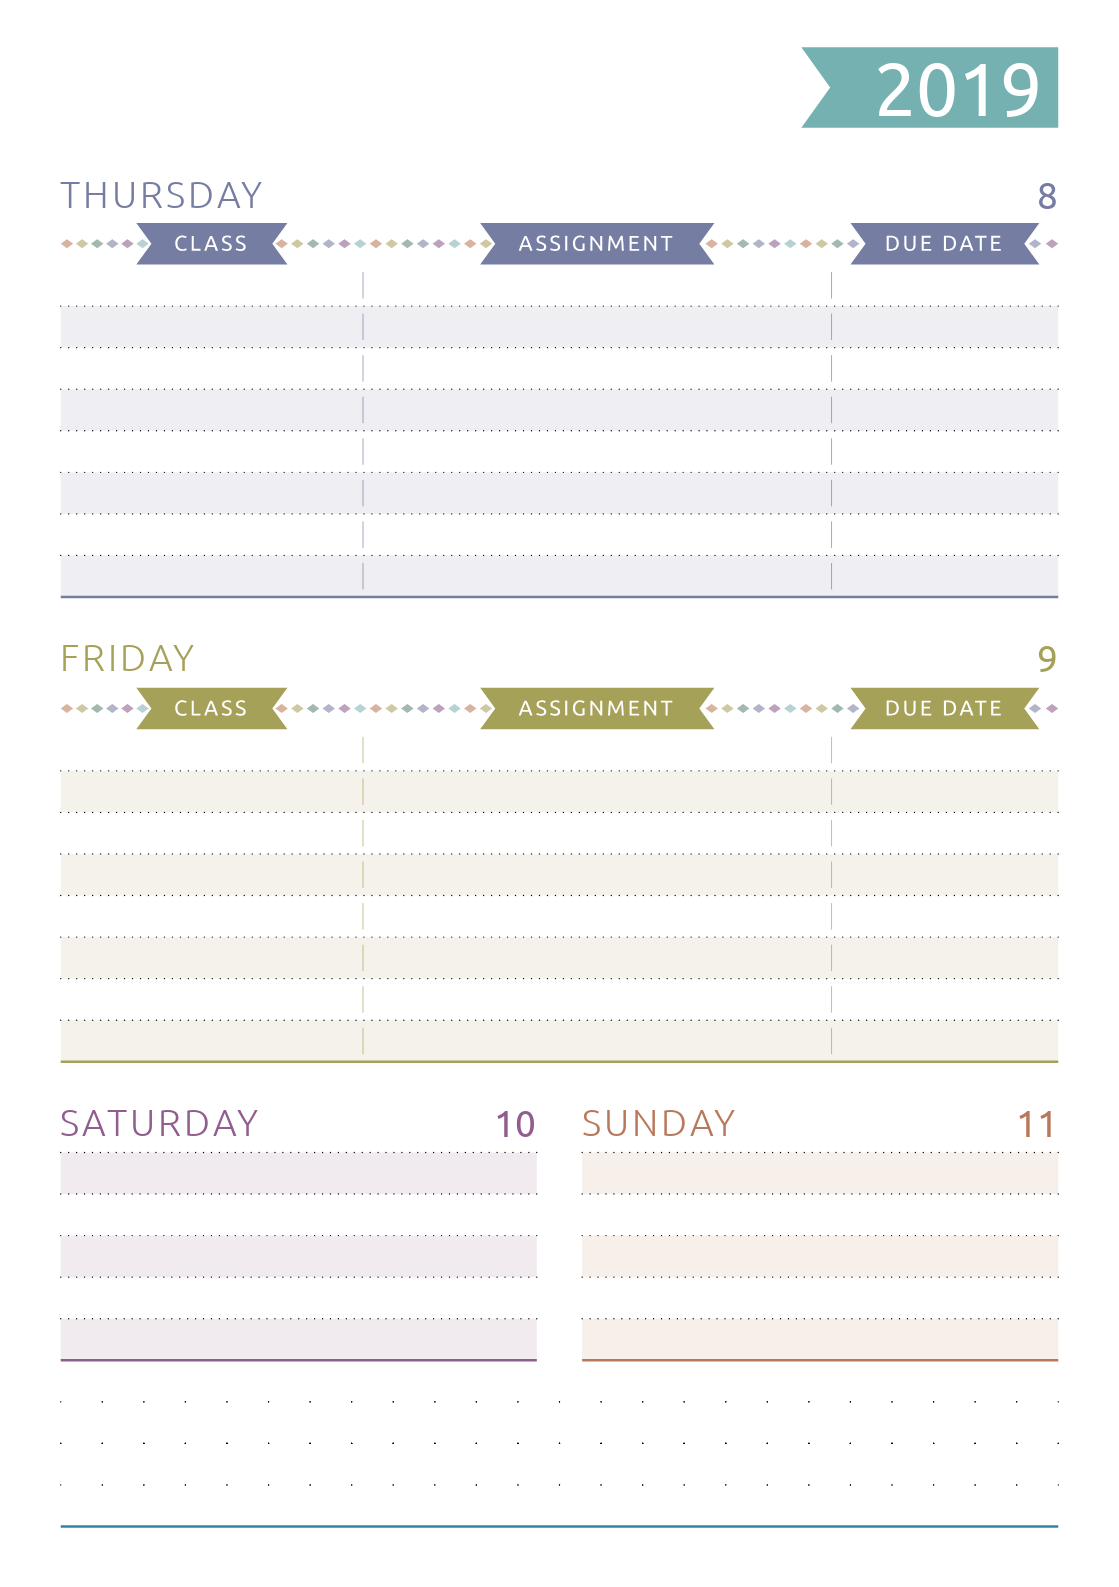 Assignment Calendar Template from onplanners.com